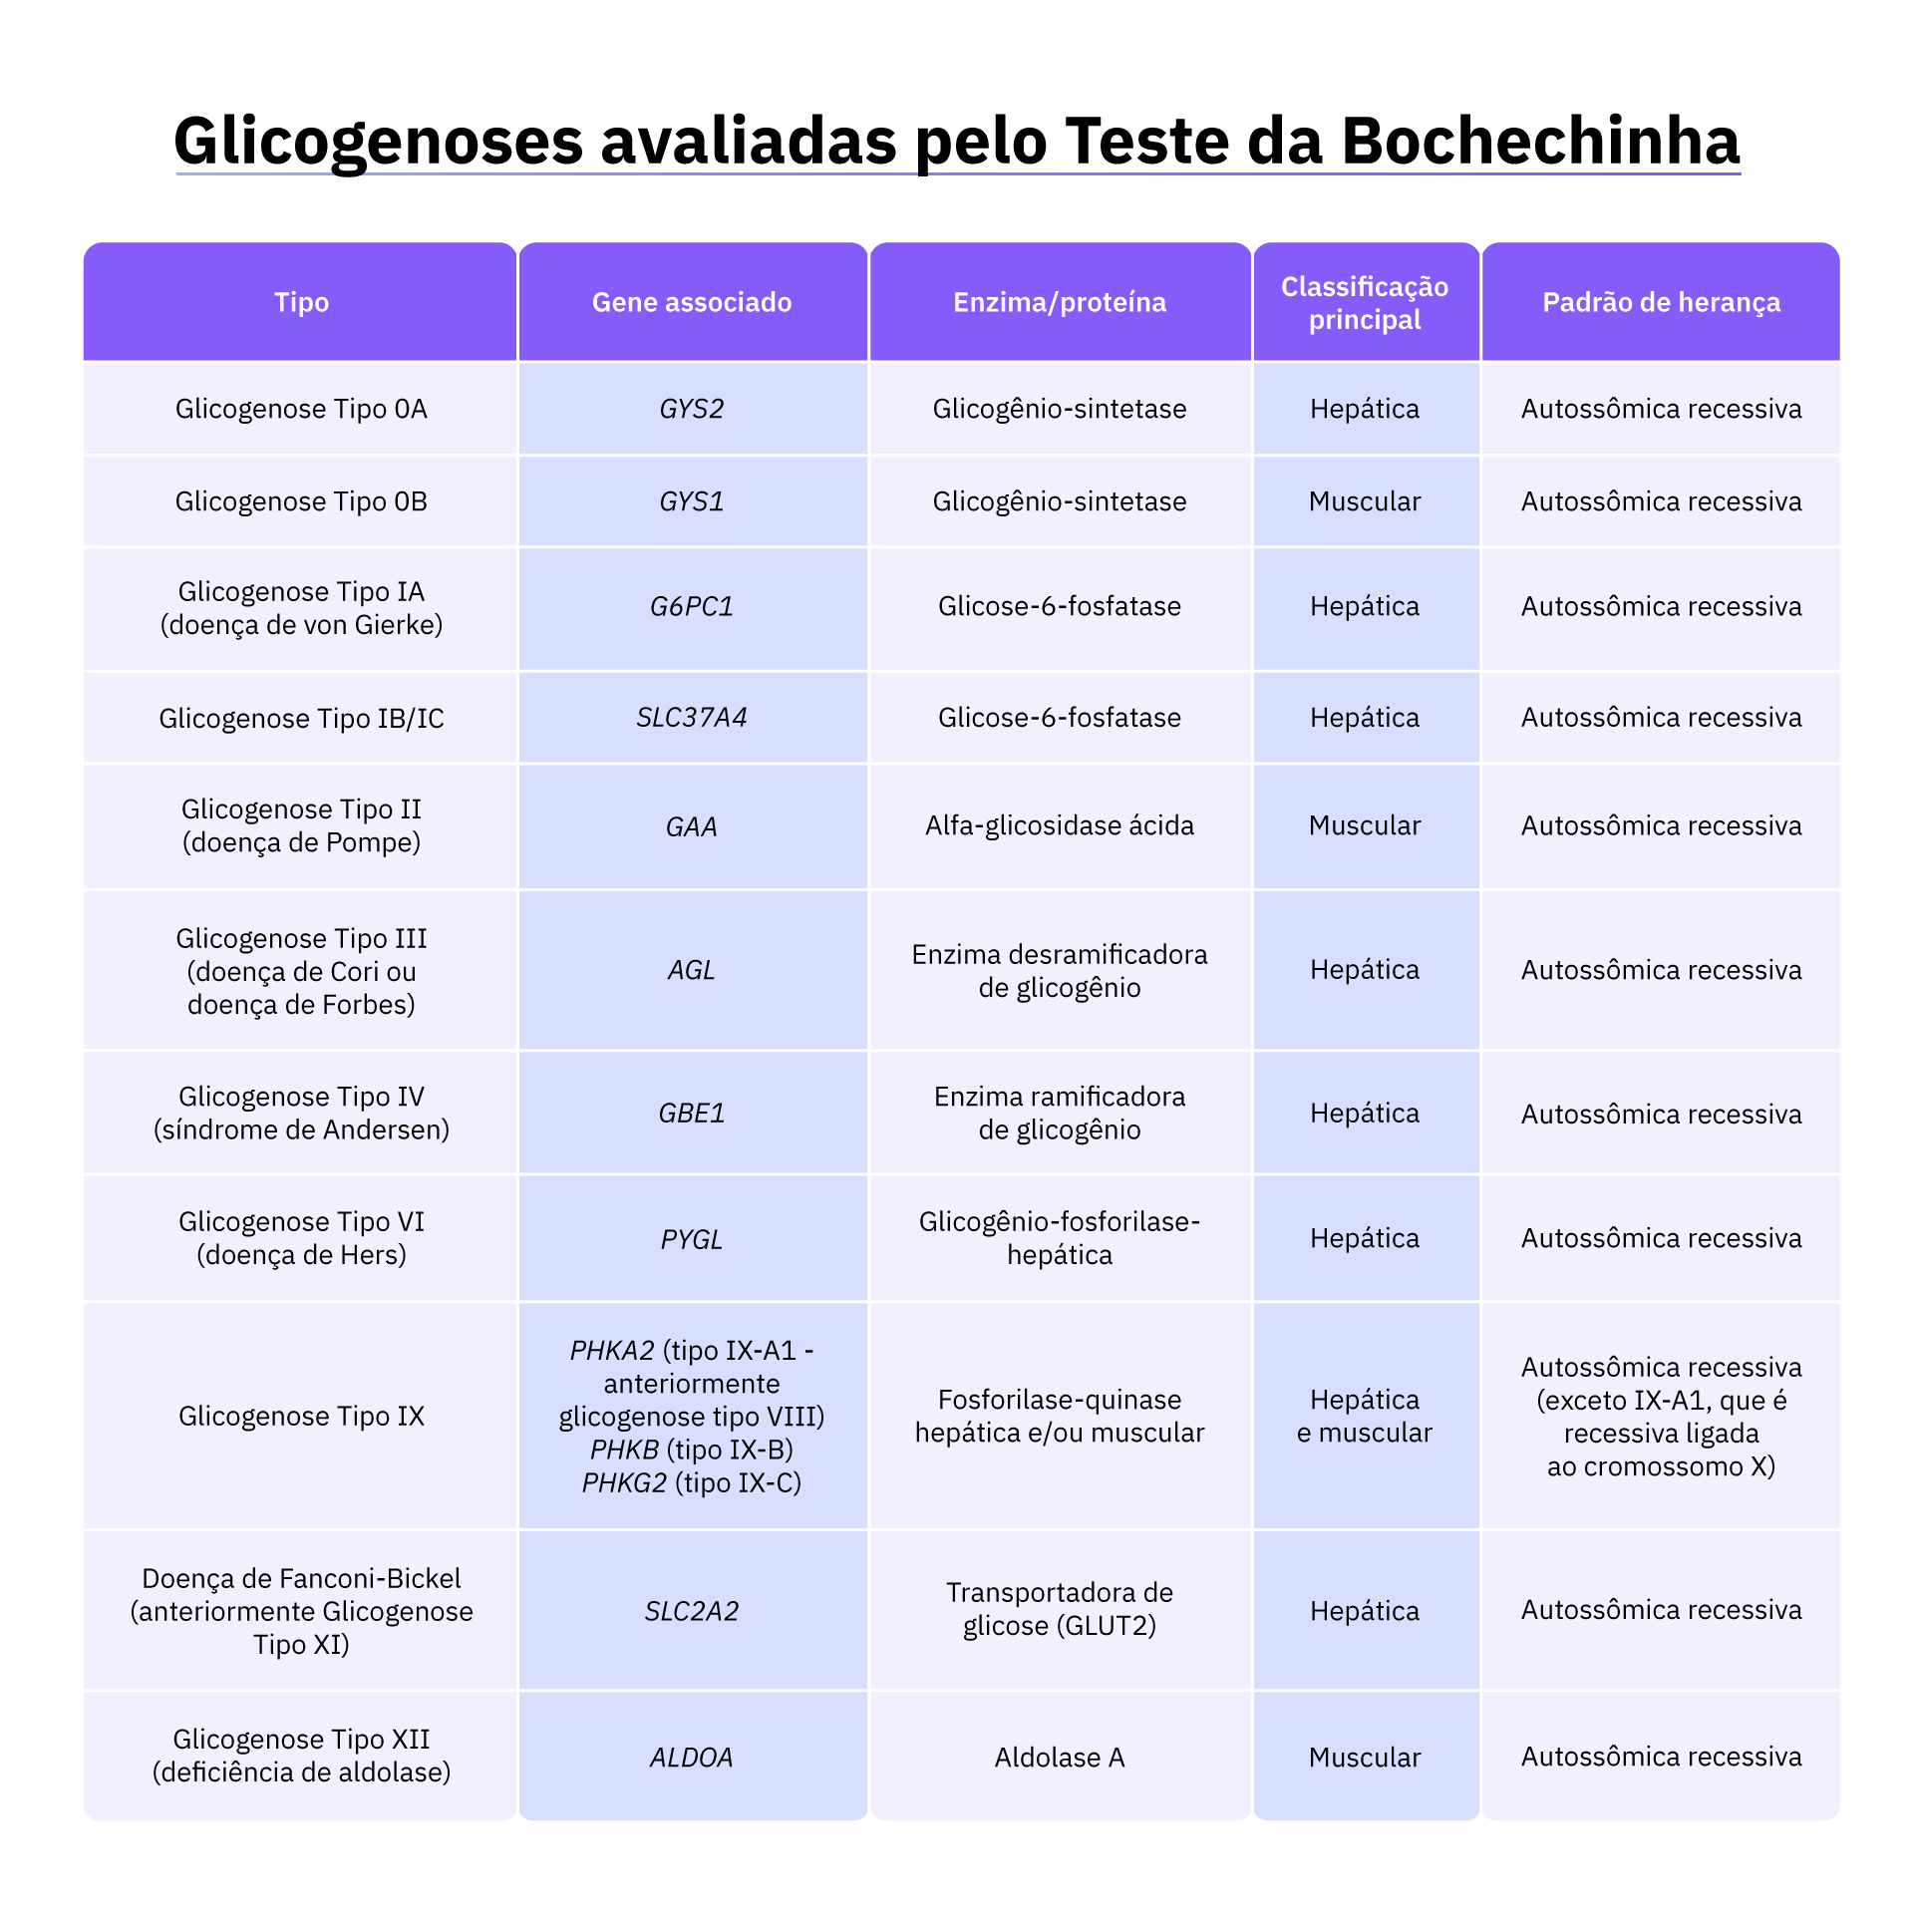 Tabela com os genes, enzimas e nomes das glicogenoses avaliadas pelo Teste da Bochechinha.